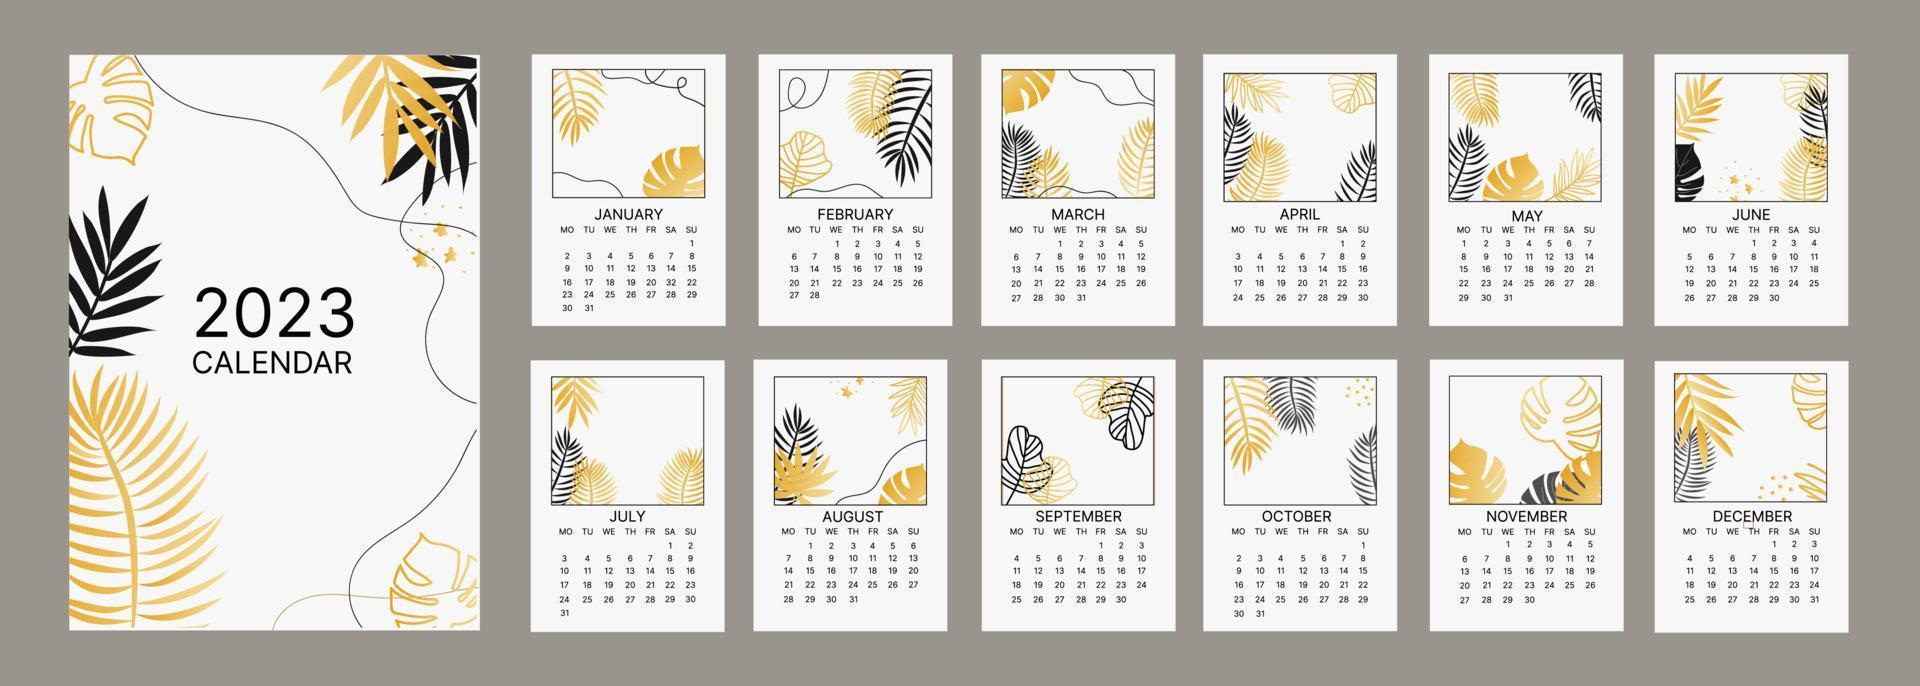 klassiek maandelijks kalender voor 2023. kalender met palm en monstera bladeren, wit en goud kleur. vector